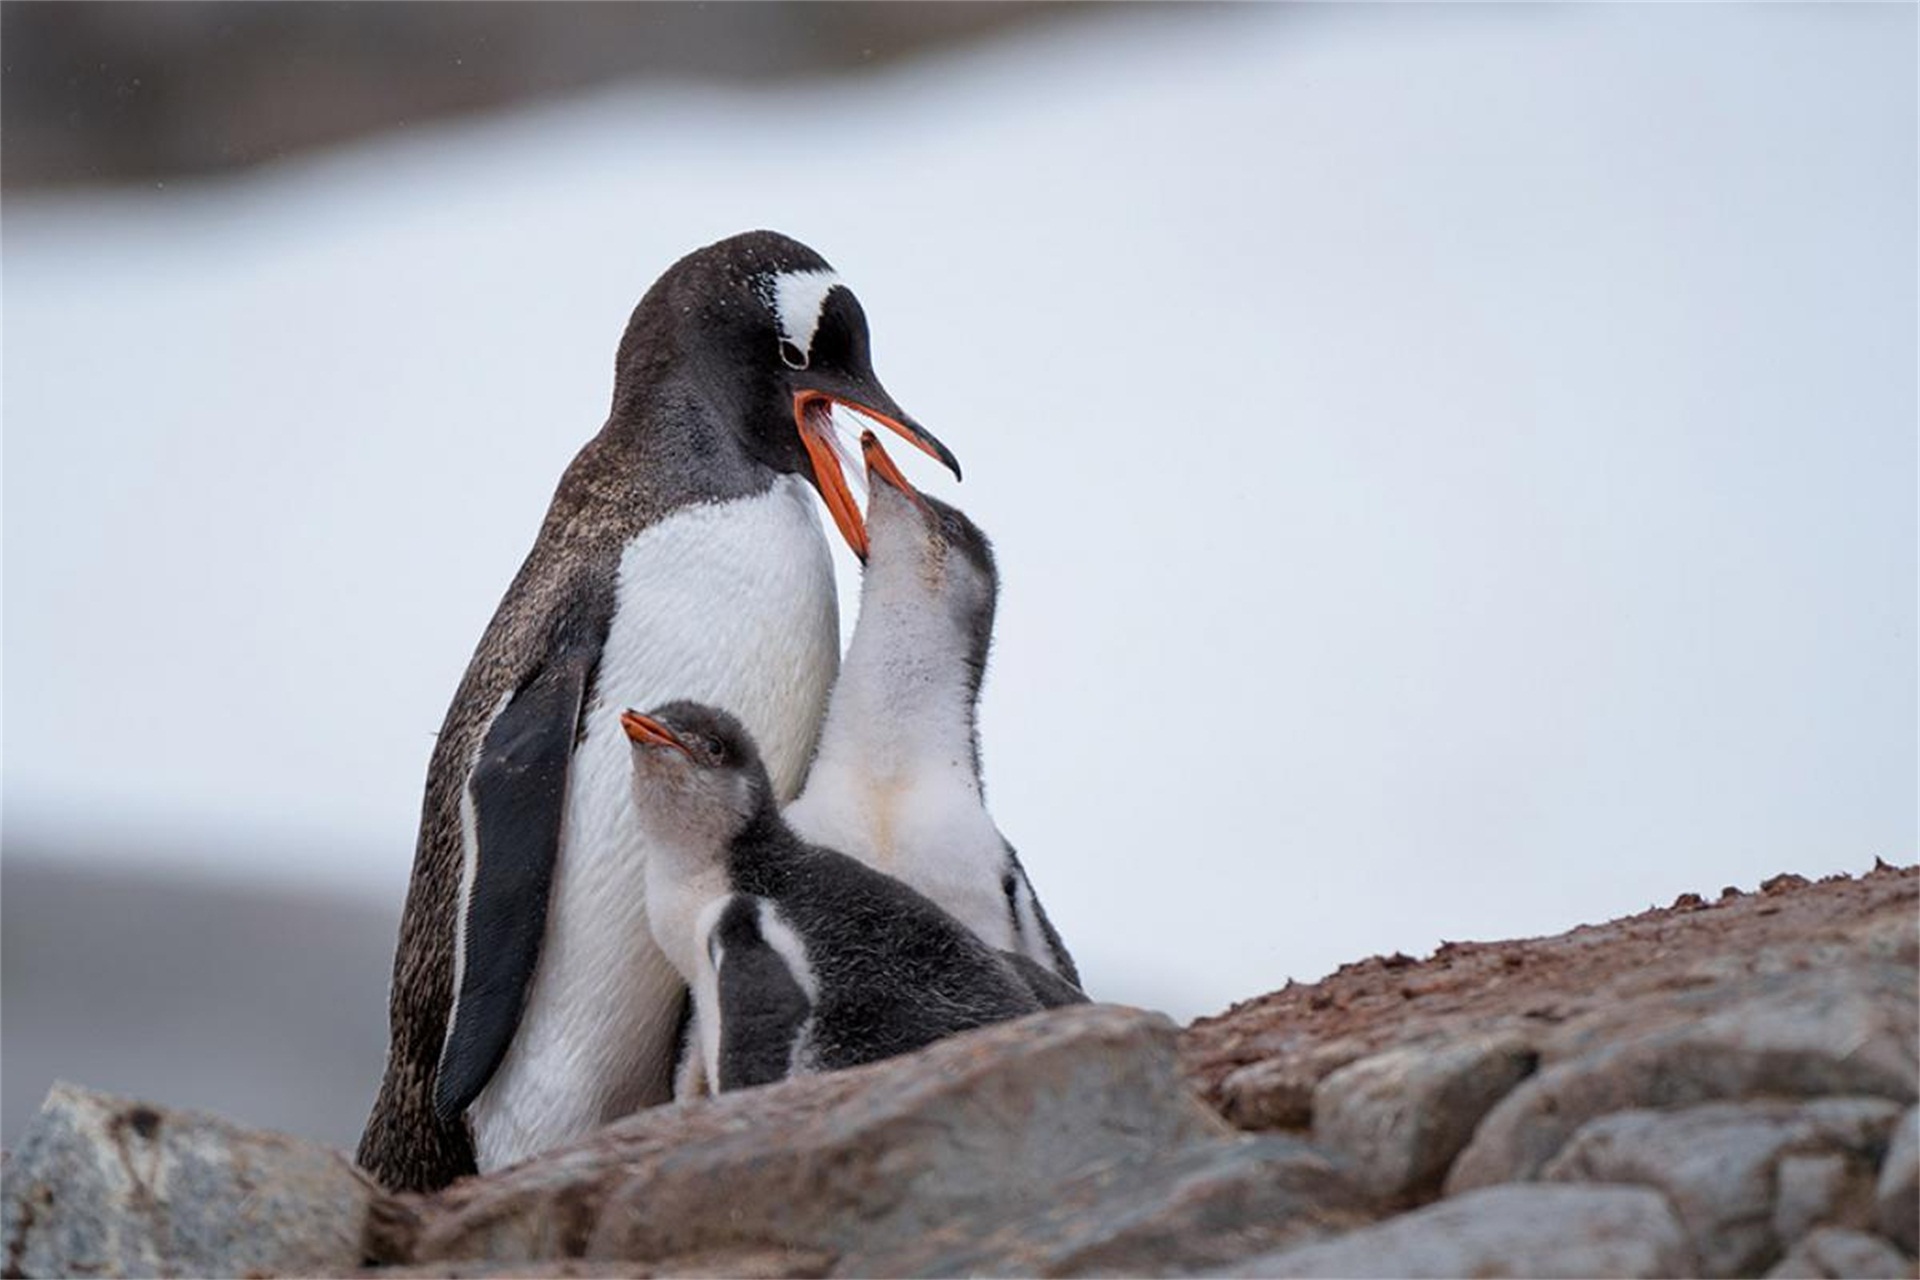 生存了1400万年的巴布亚企鹅,一夫一妻制,有些甚至是